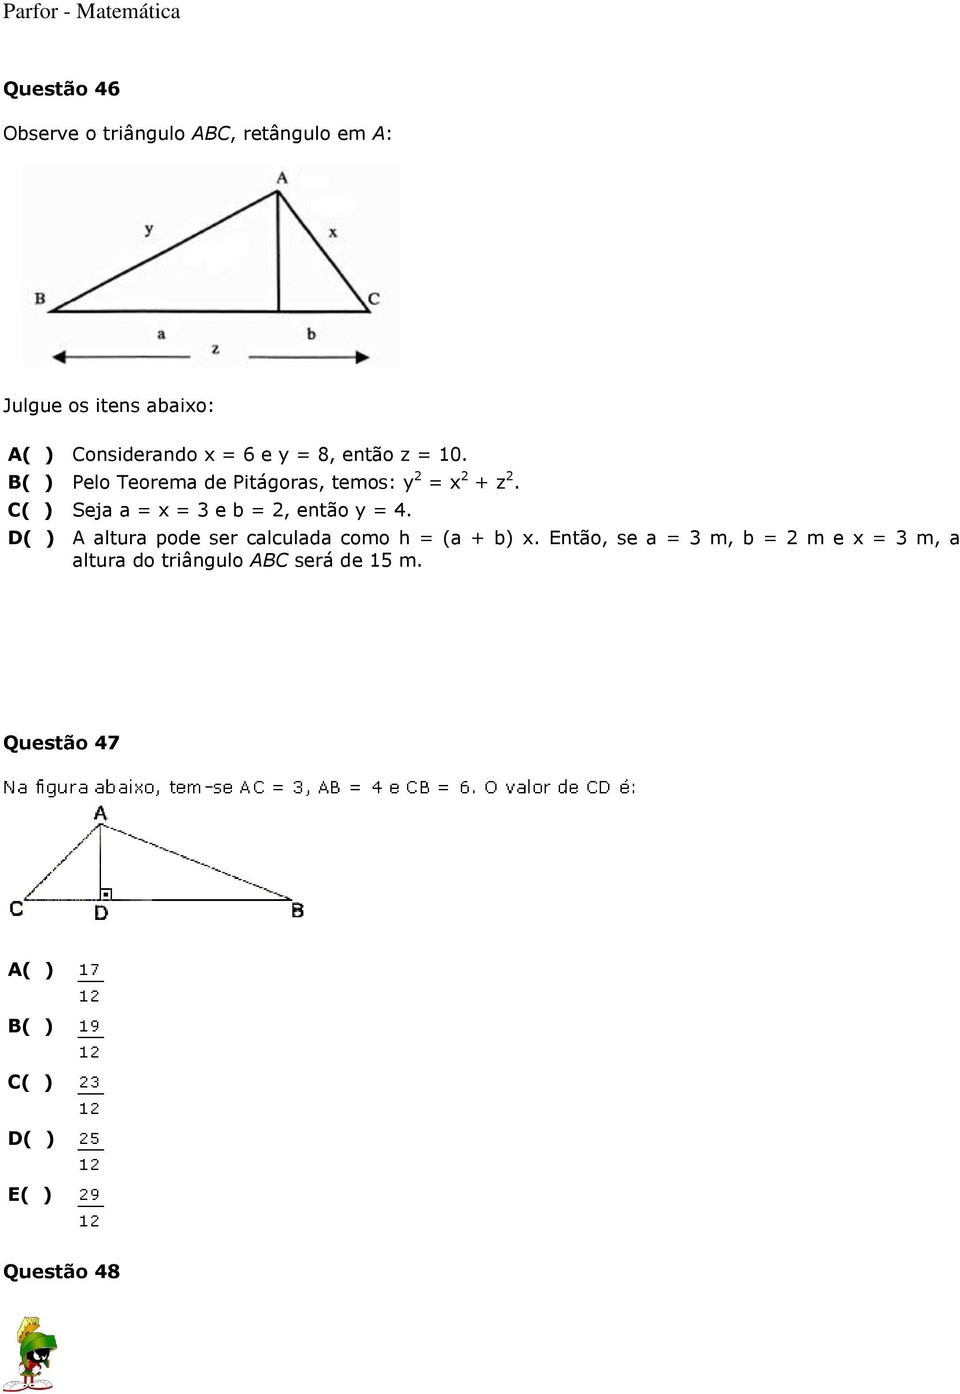 C( ) Seja a = x = 3 e b = 2, então y = 4. D( ) A altura pode ser calculada como h = (a + b) x.